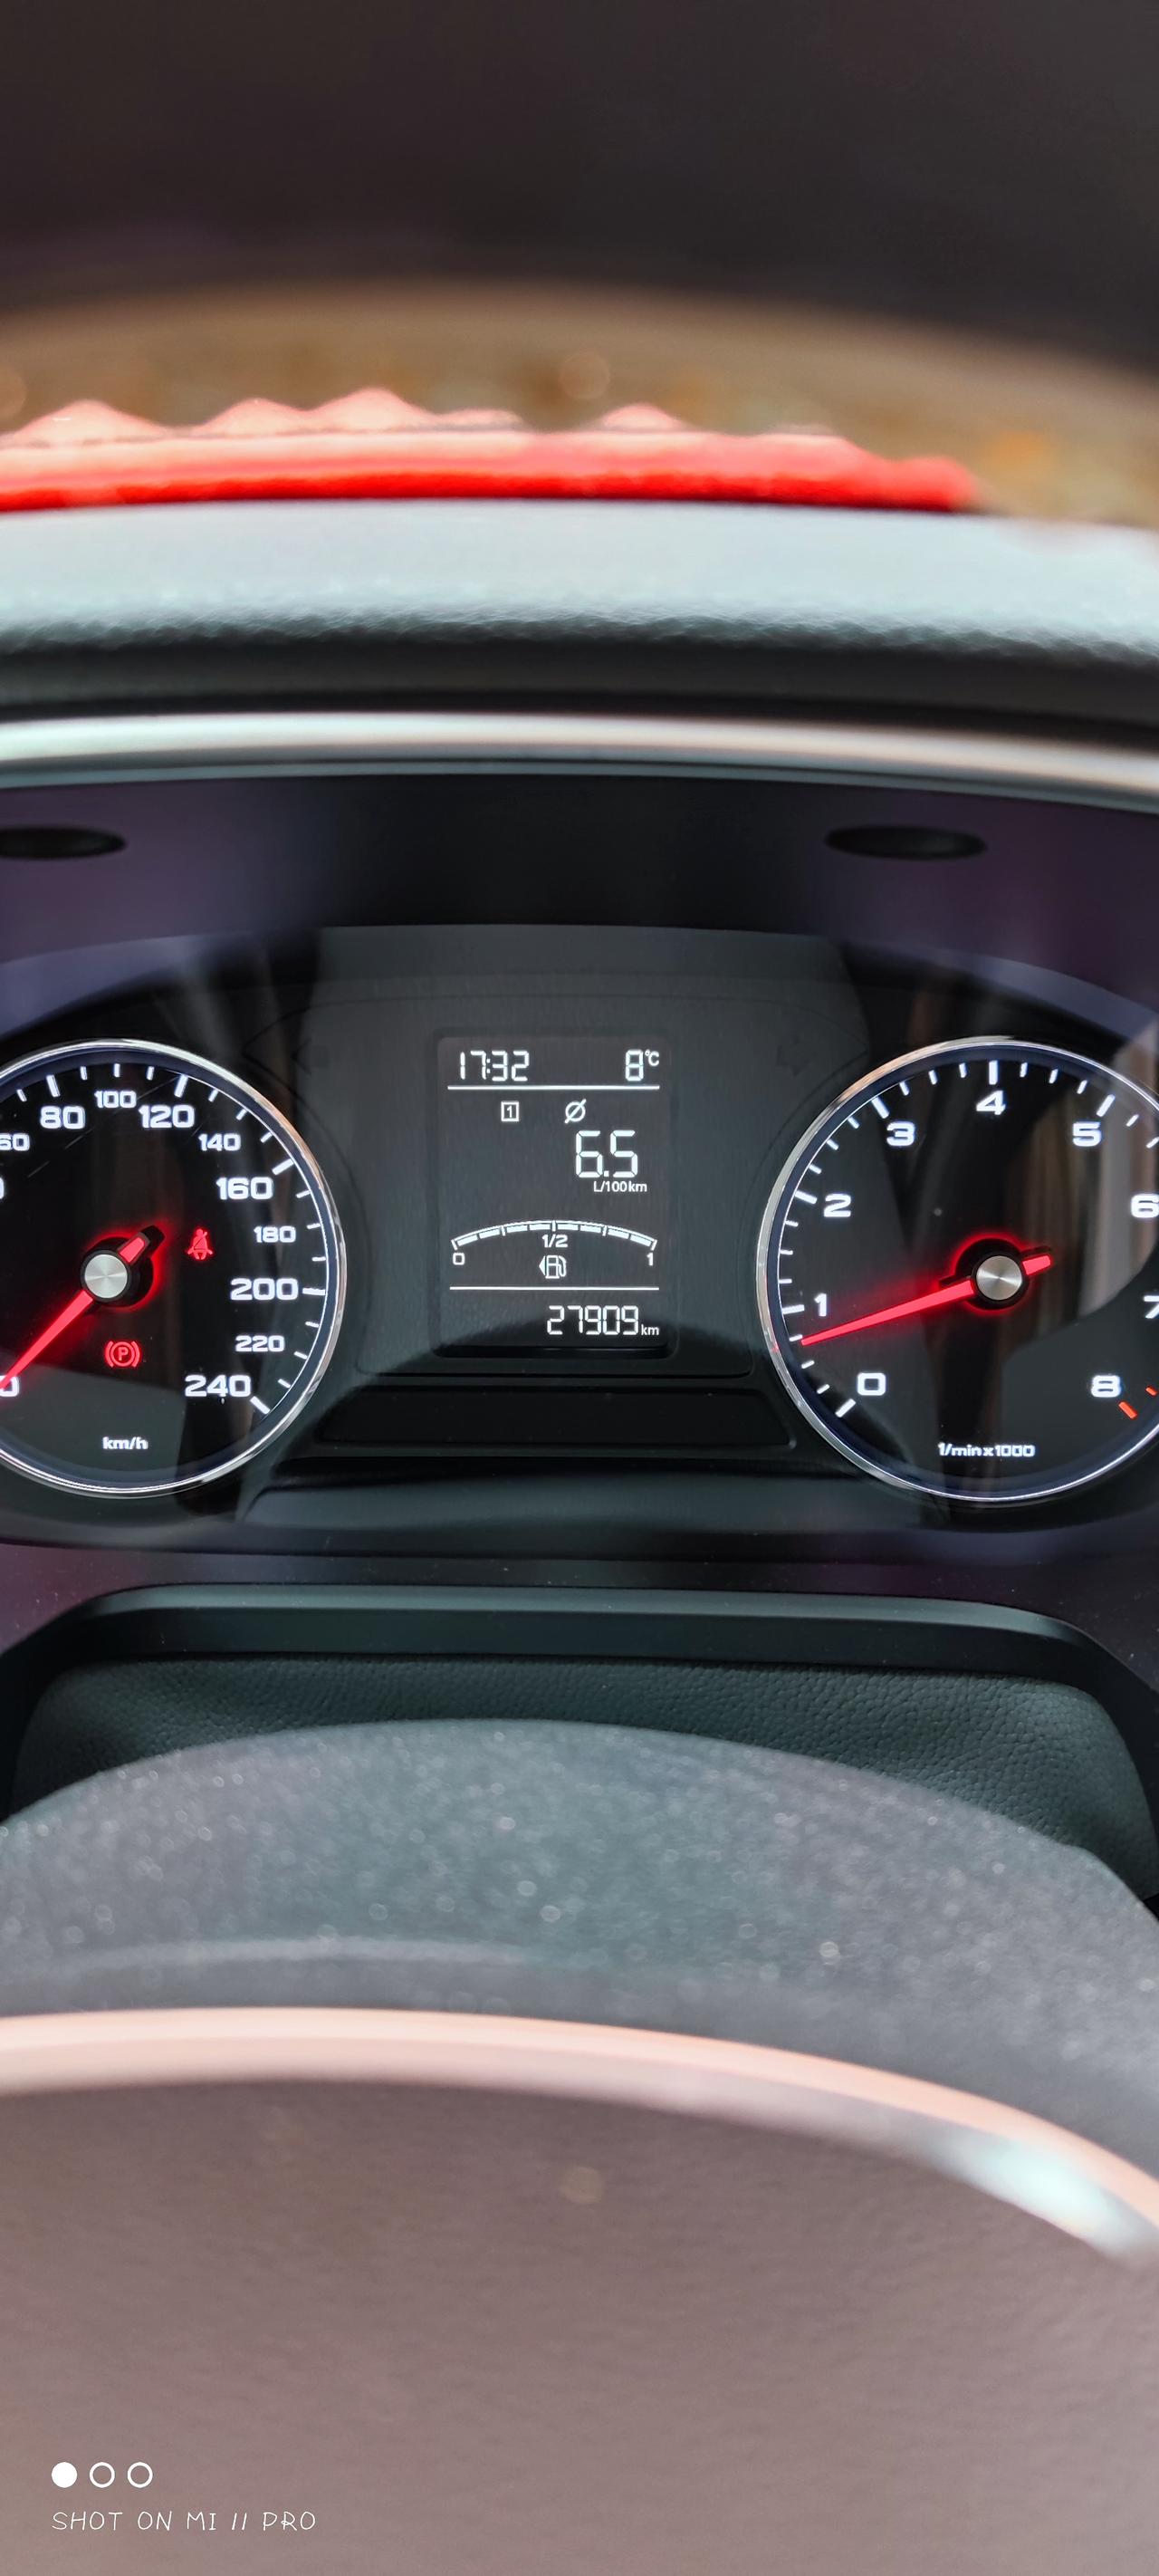 荣威RX5 大家行驶途中后轮有声音吗？好像是右后，就是嗡嗡的那种，速度越快越明显，尤其在隧道里。是轴承坏了还是轮胎？以前